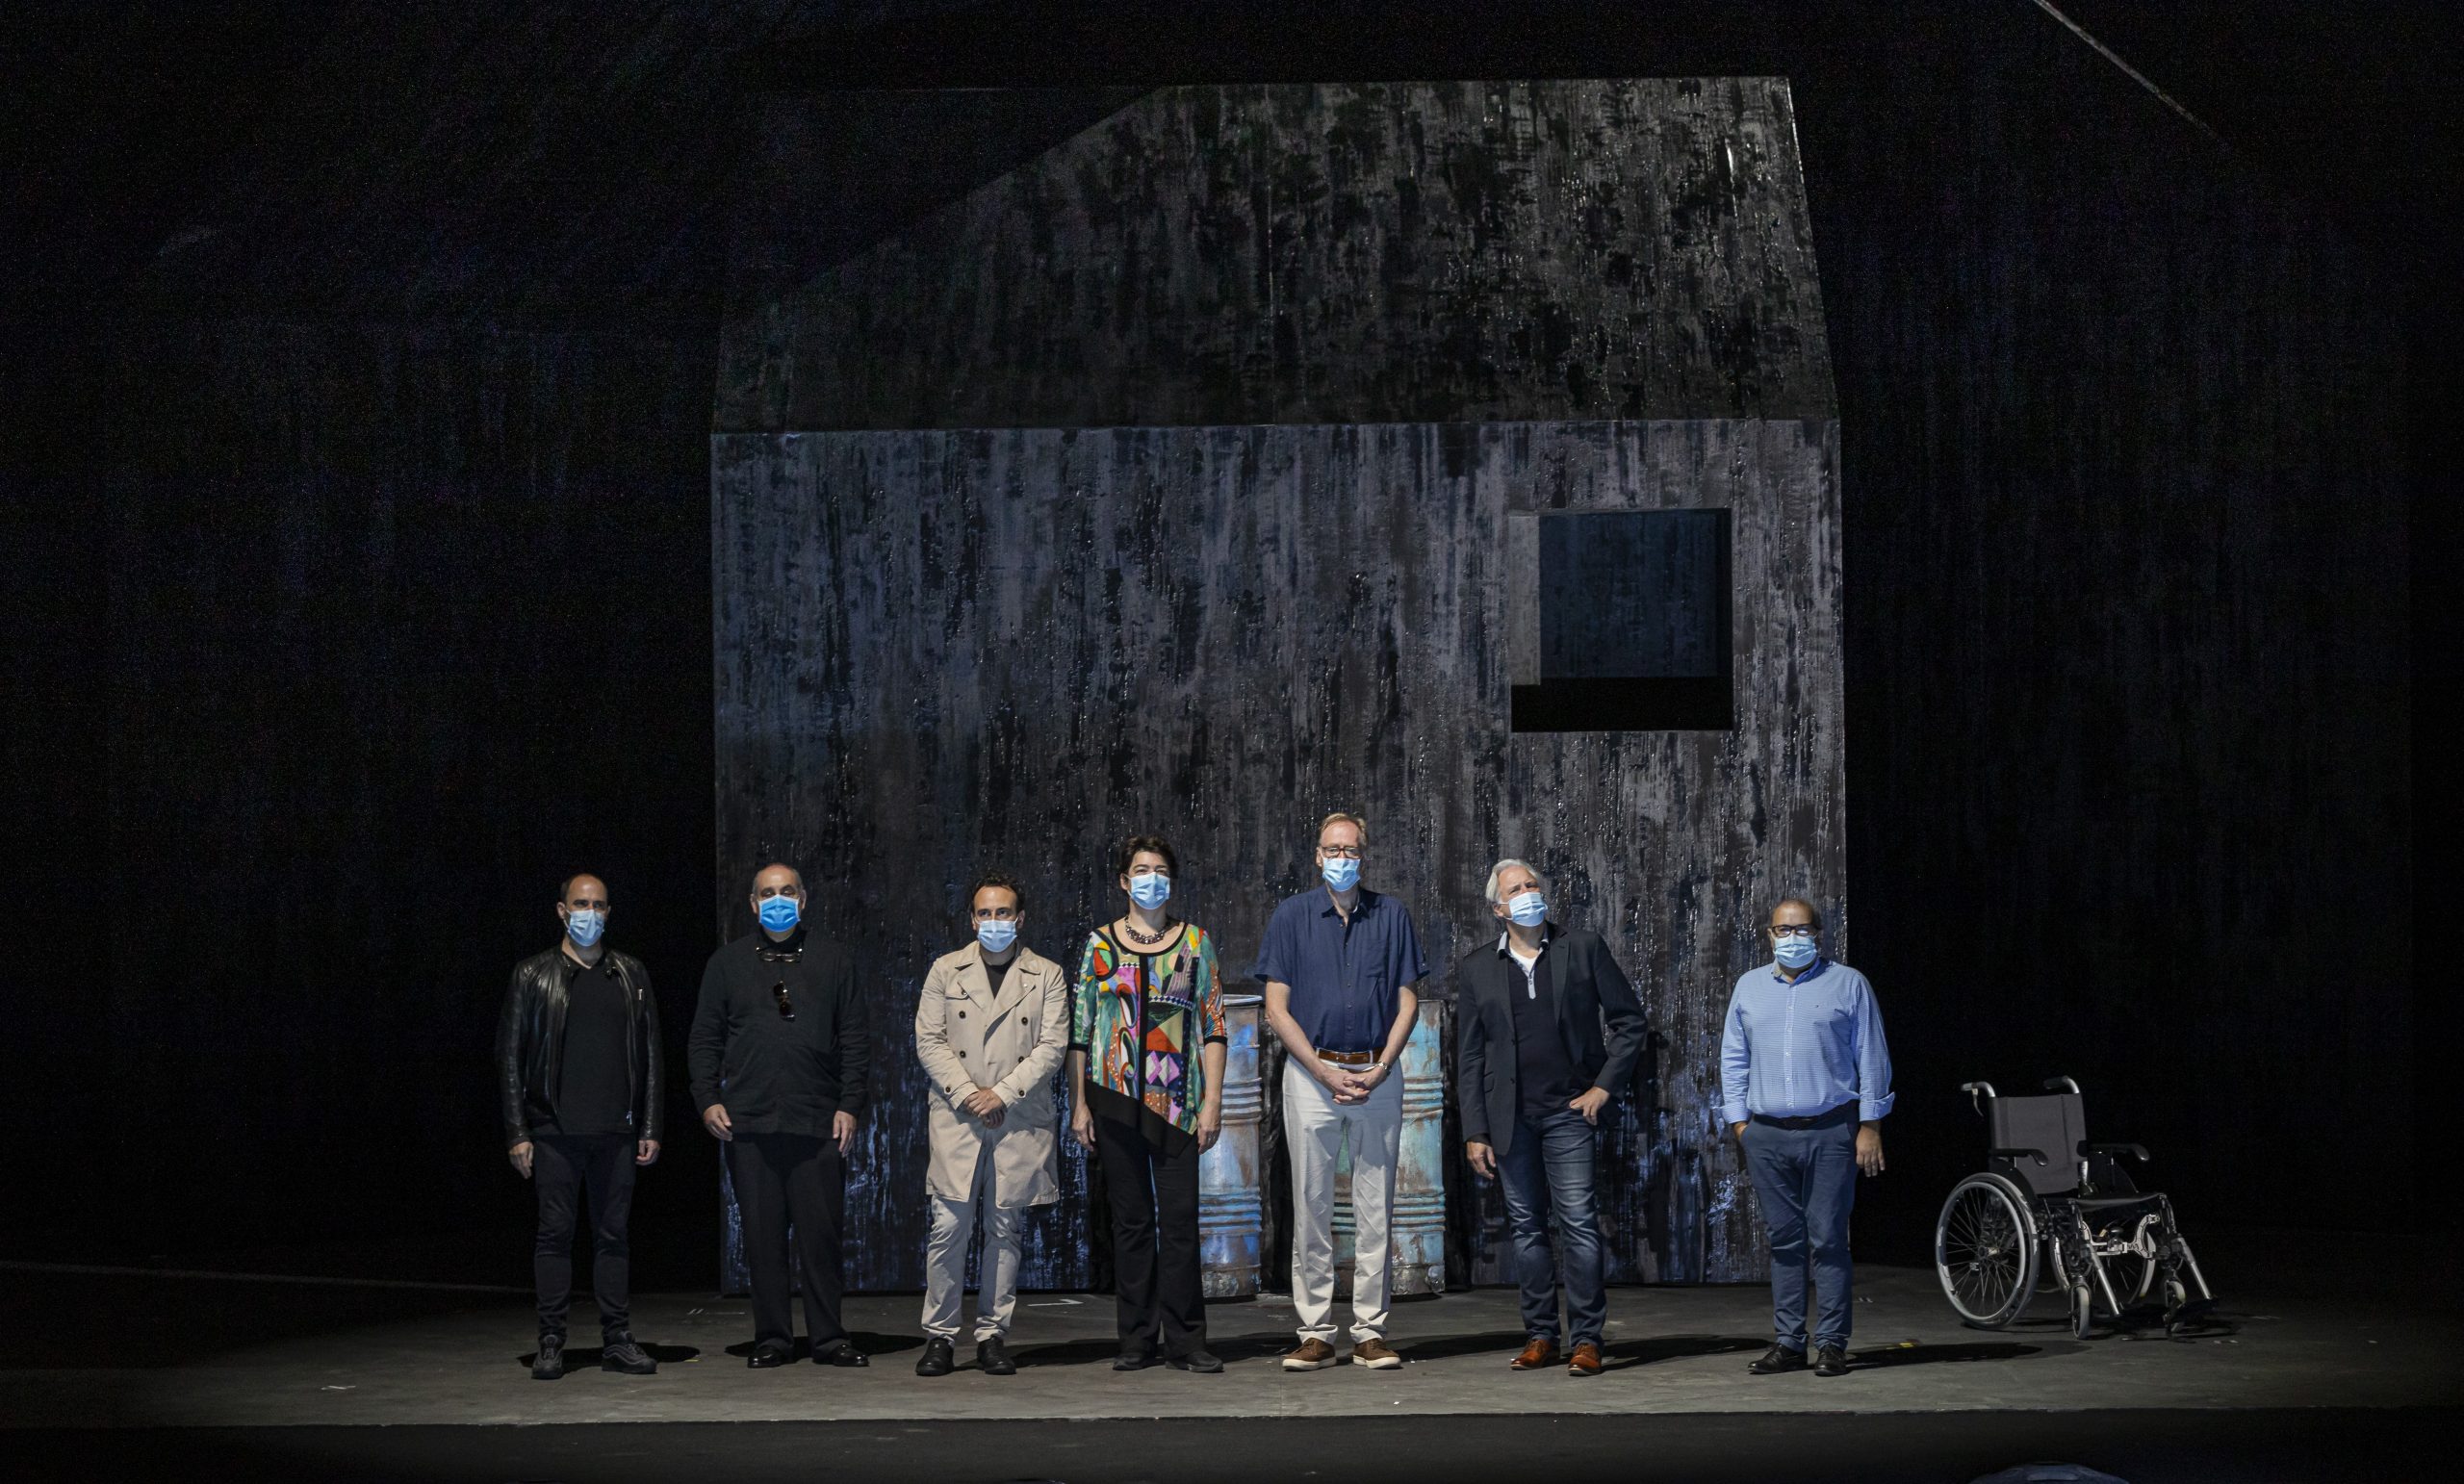 Les Arts propone una reflexión sobre la resiliencia humana con la ópera ‘Fin de partie’, de Kurtág